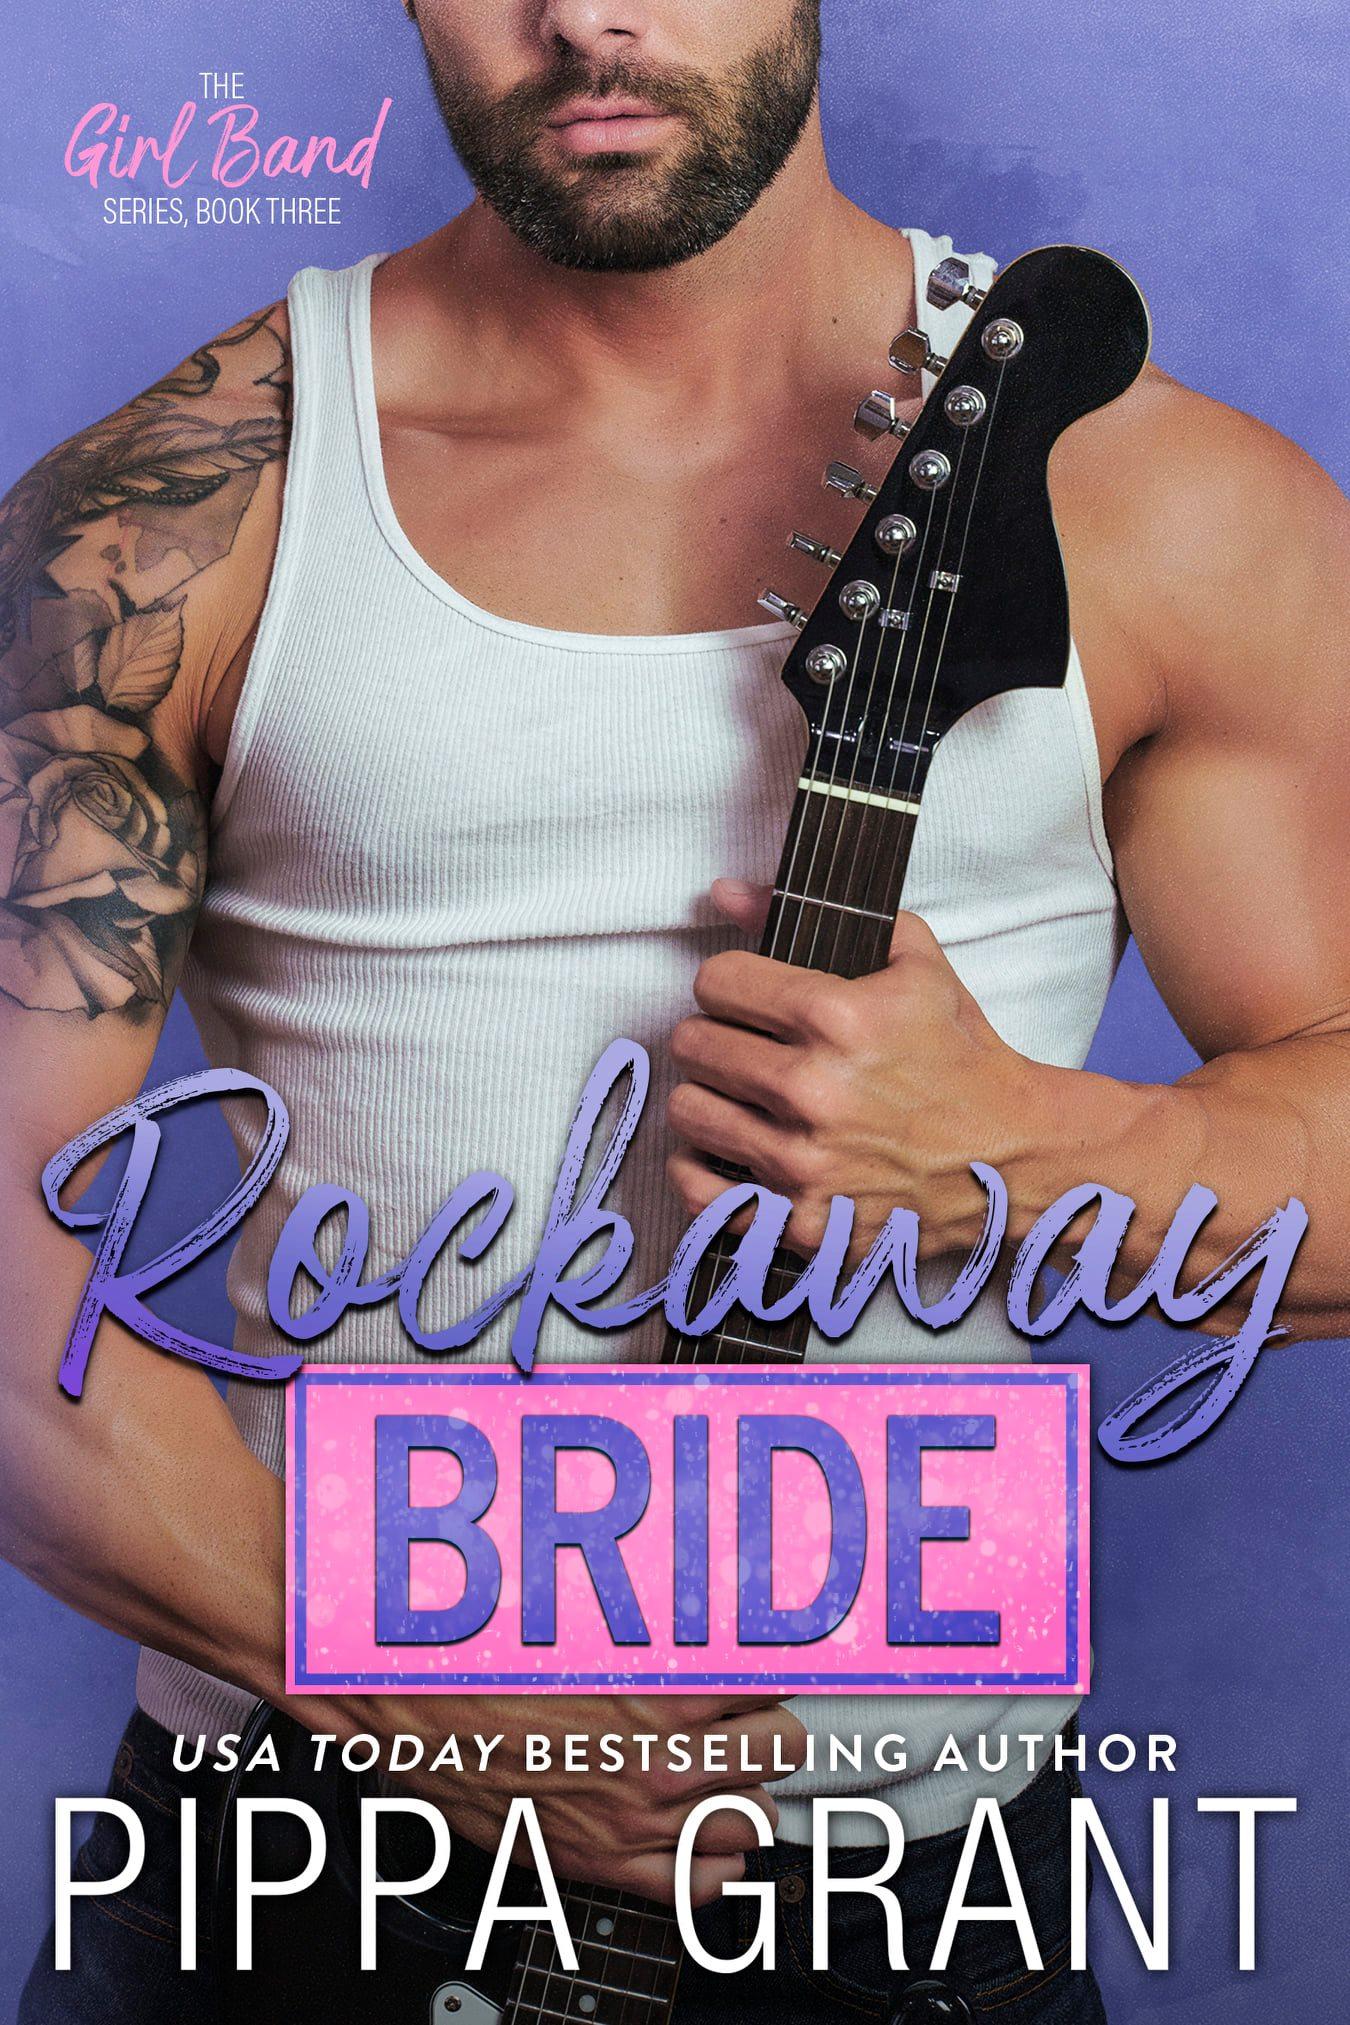 Rockaway Bride